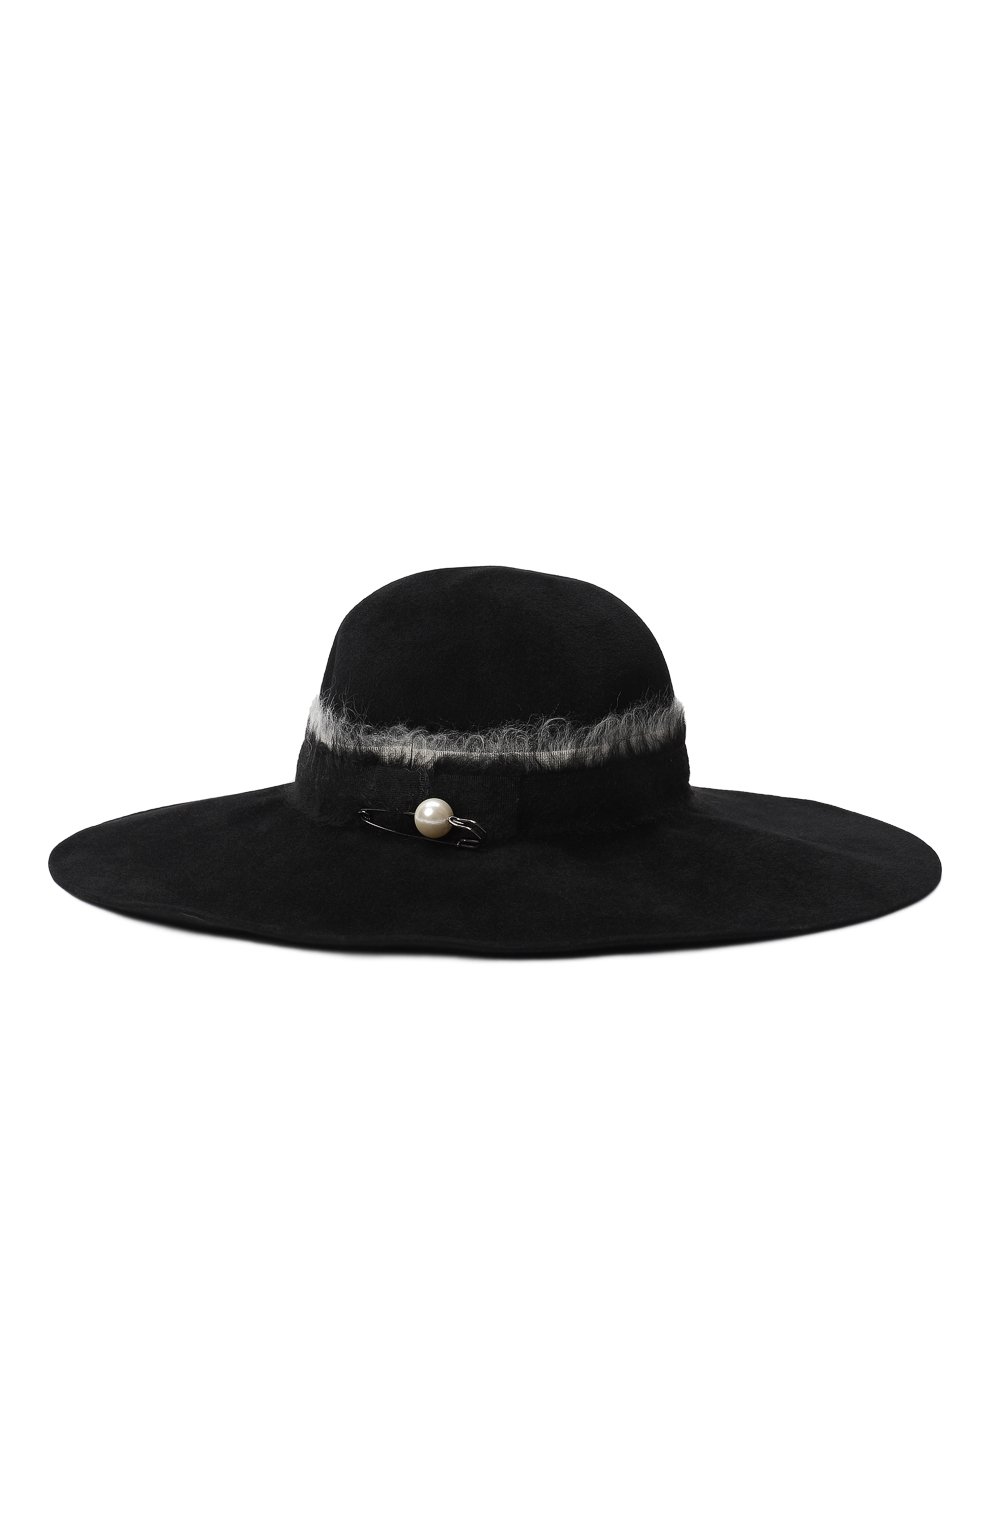 Фетровая шляпа | Eugenia Kim | Чёрный - 1